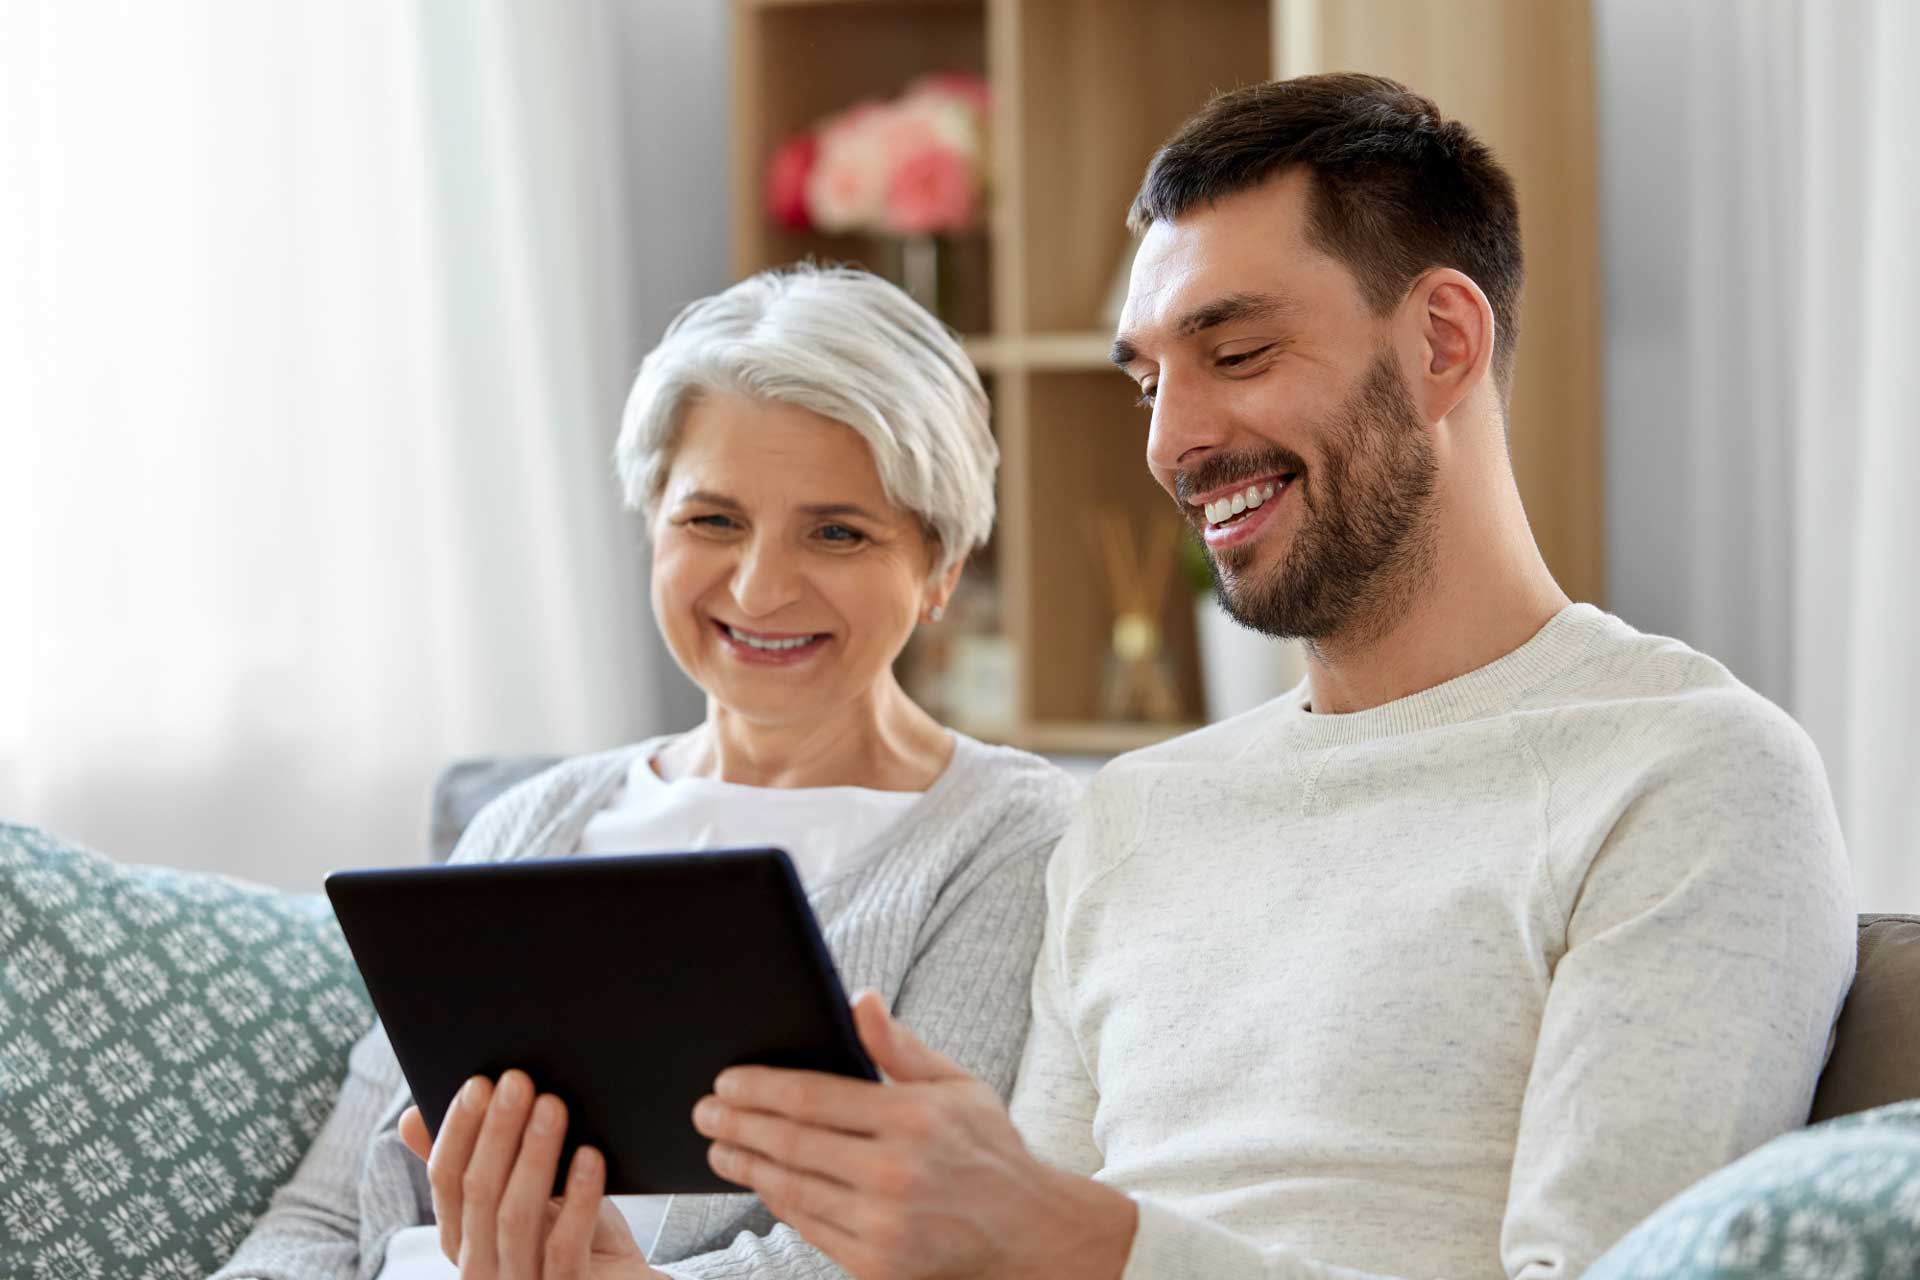 High Tech Grandparents: Seniors embrace gadgets – The Denver Post